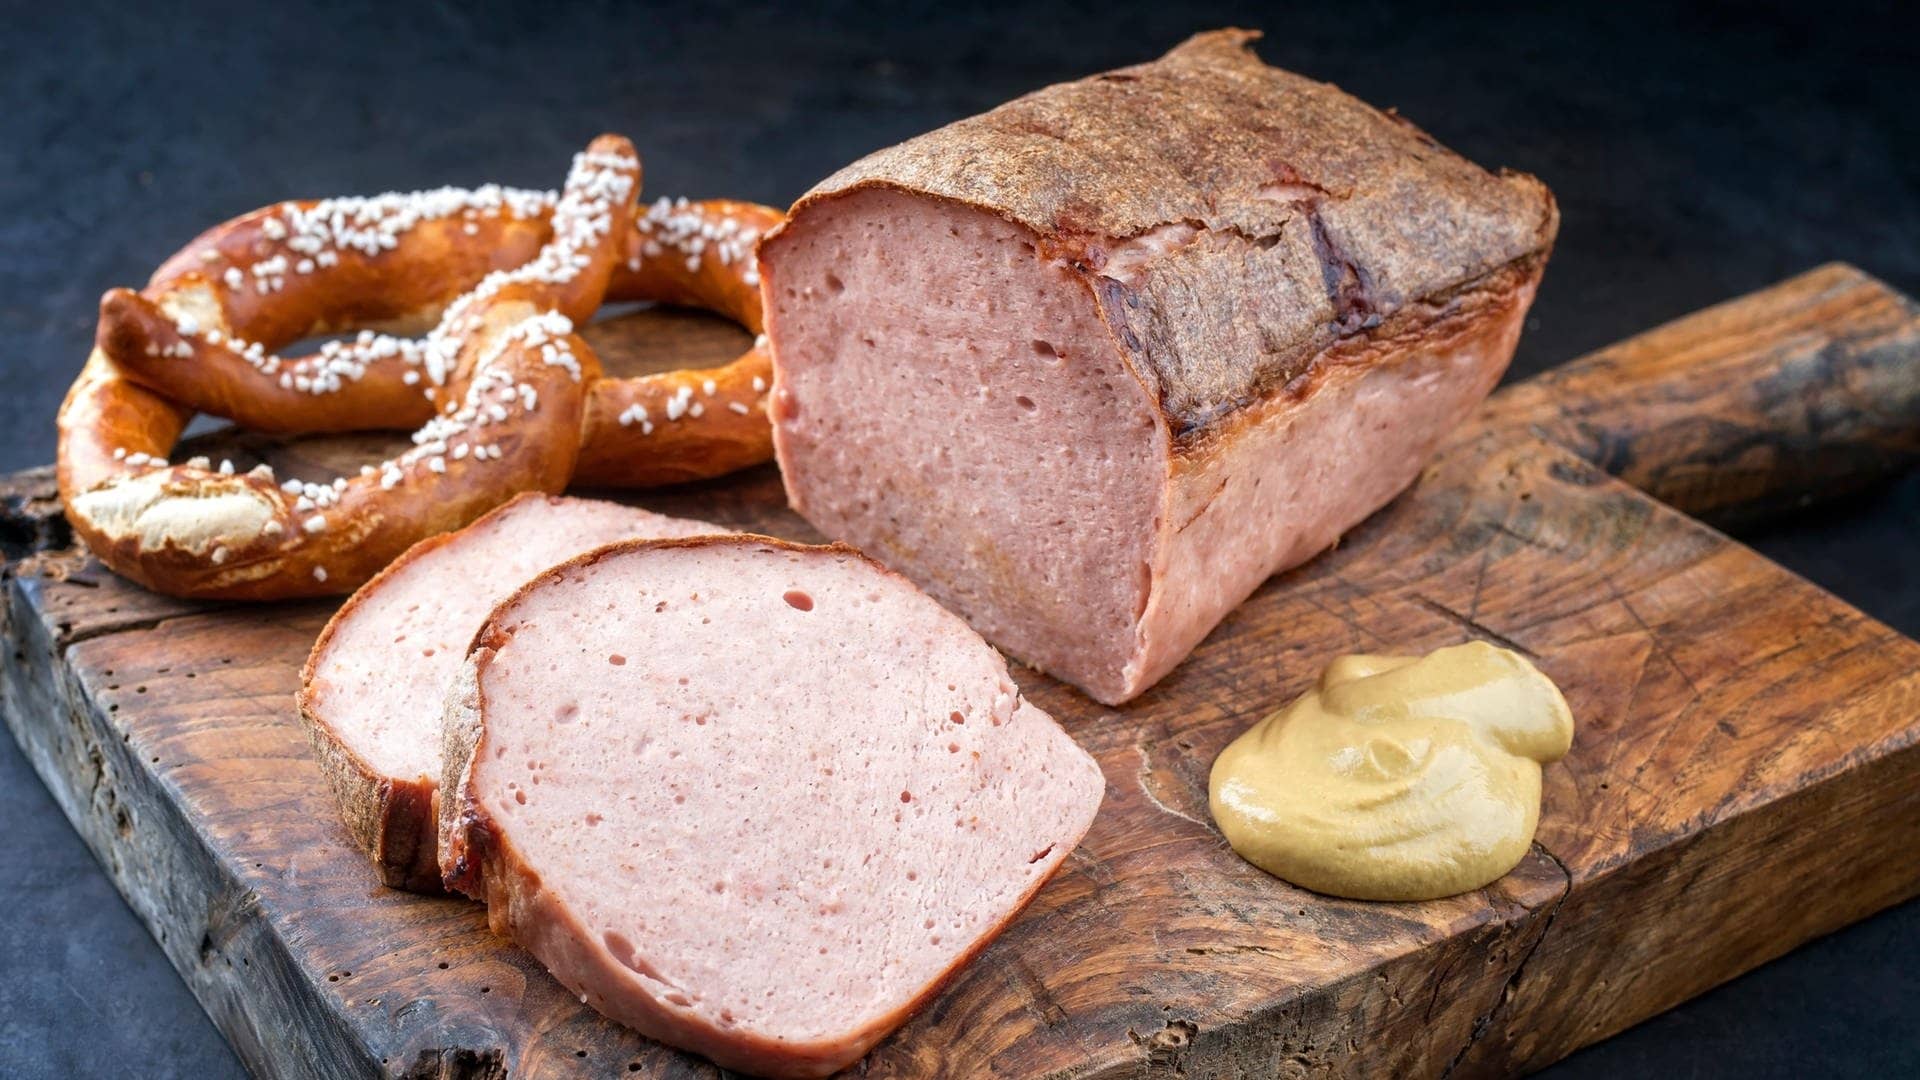 Fleischkäse liebt aufgeschnitten auf einem Brett mit Senf und bayerischen Brezeln – der Begriff Fleischkäse gehört wohl in die Kategorie „widersprüchliche deutsche Wörter“. Was denn nun: Fleisch oder Käse?